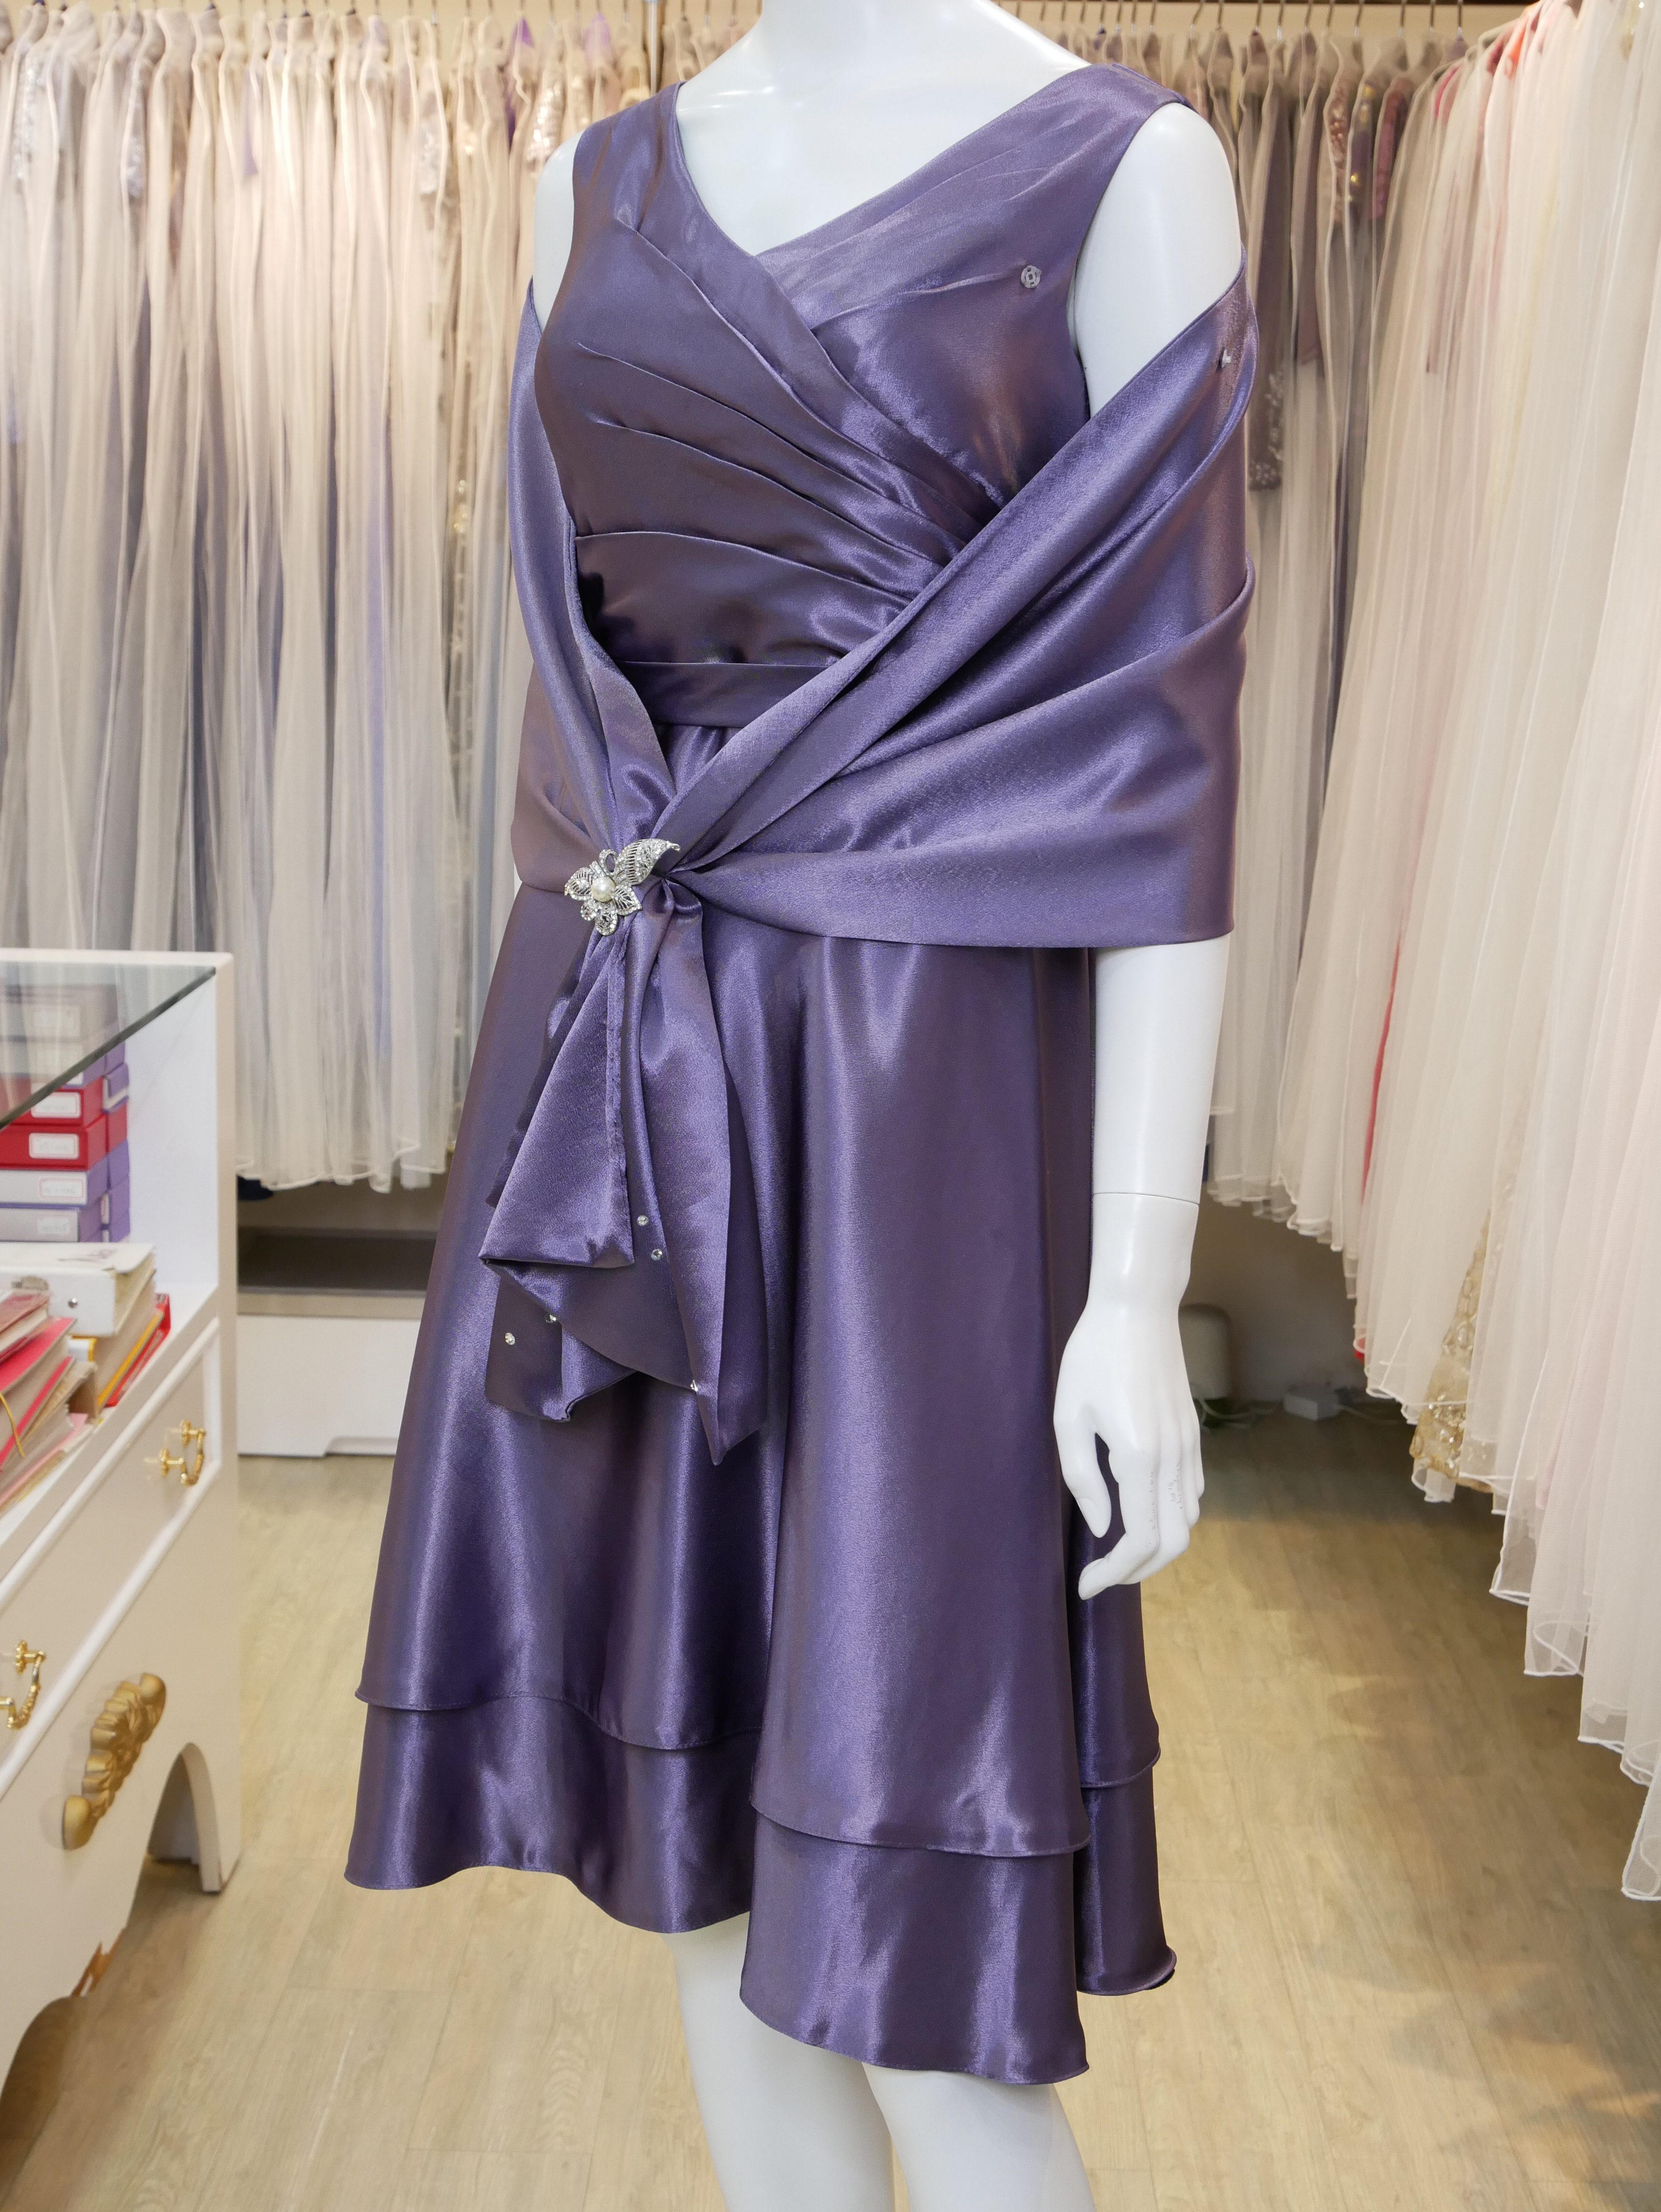 台北媽媽禮服,紫色,V領,A-line,短禮服,小禮服,披肩